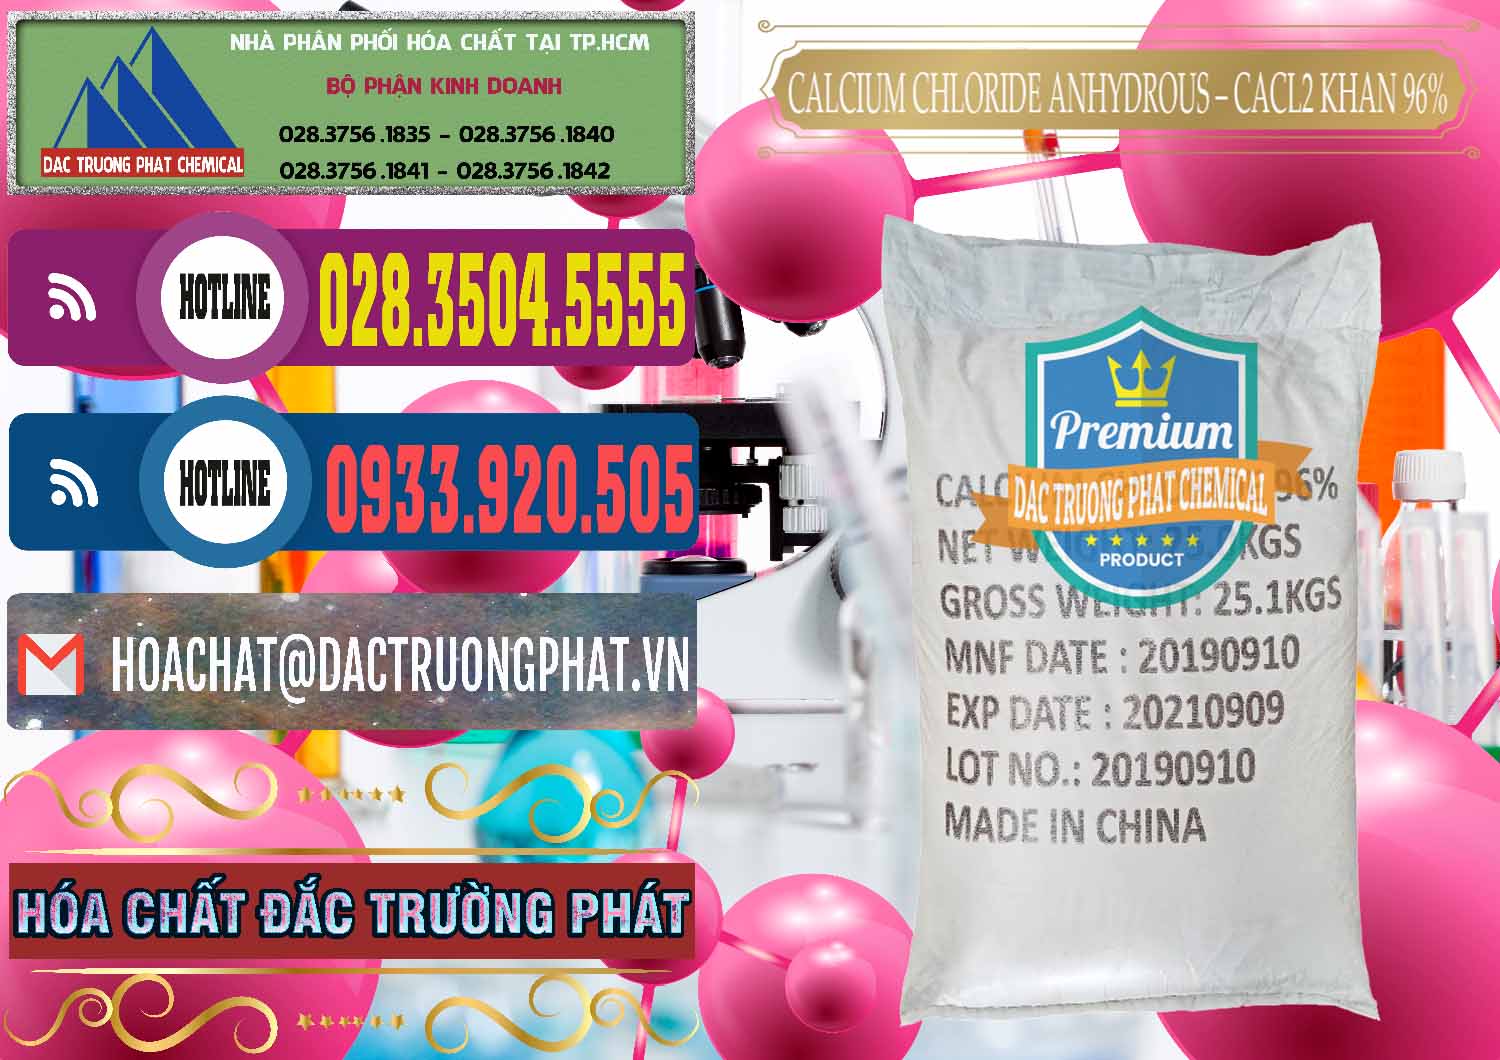 Cty chuyên bán ( cung cấp ) CaCl2 – Canxi Clorua Anhydrous Khan 96% Trung Quốc China - 0043 - Nơi bán - phân phối hóa chất tại TP.HCM - muabanhoachat.com.vn